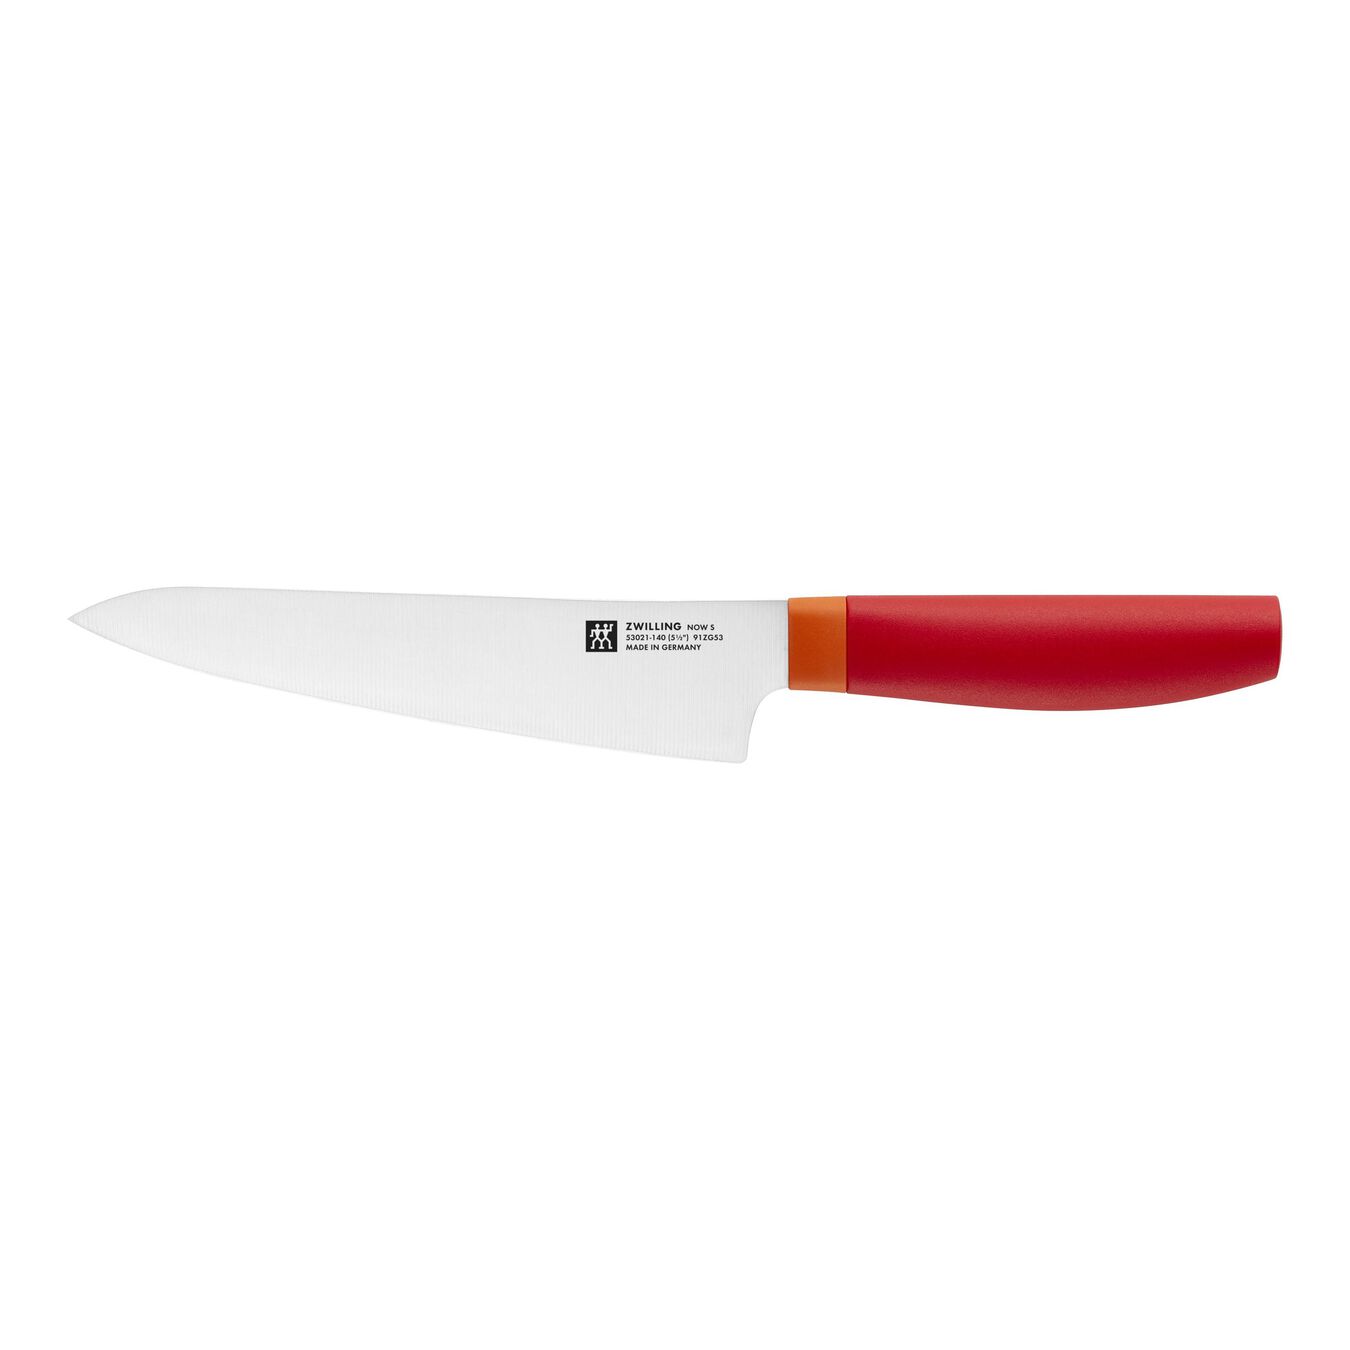 Coltello Chef compact liscio - 14 cm, rosso,,large 1